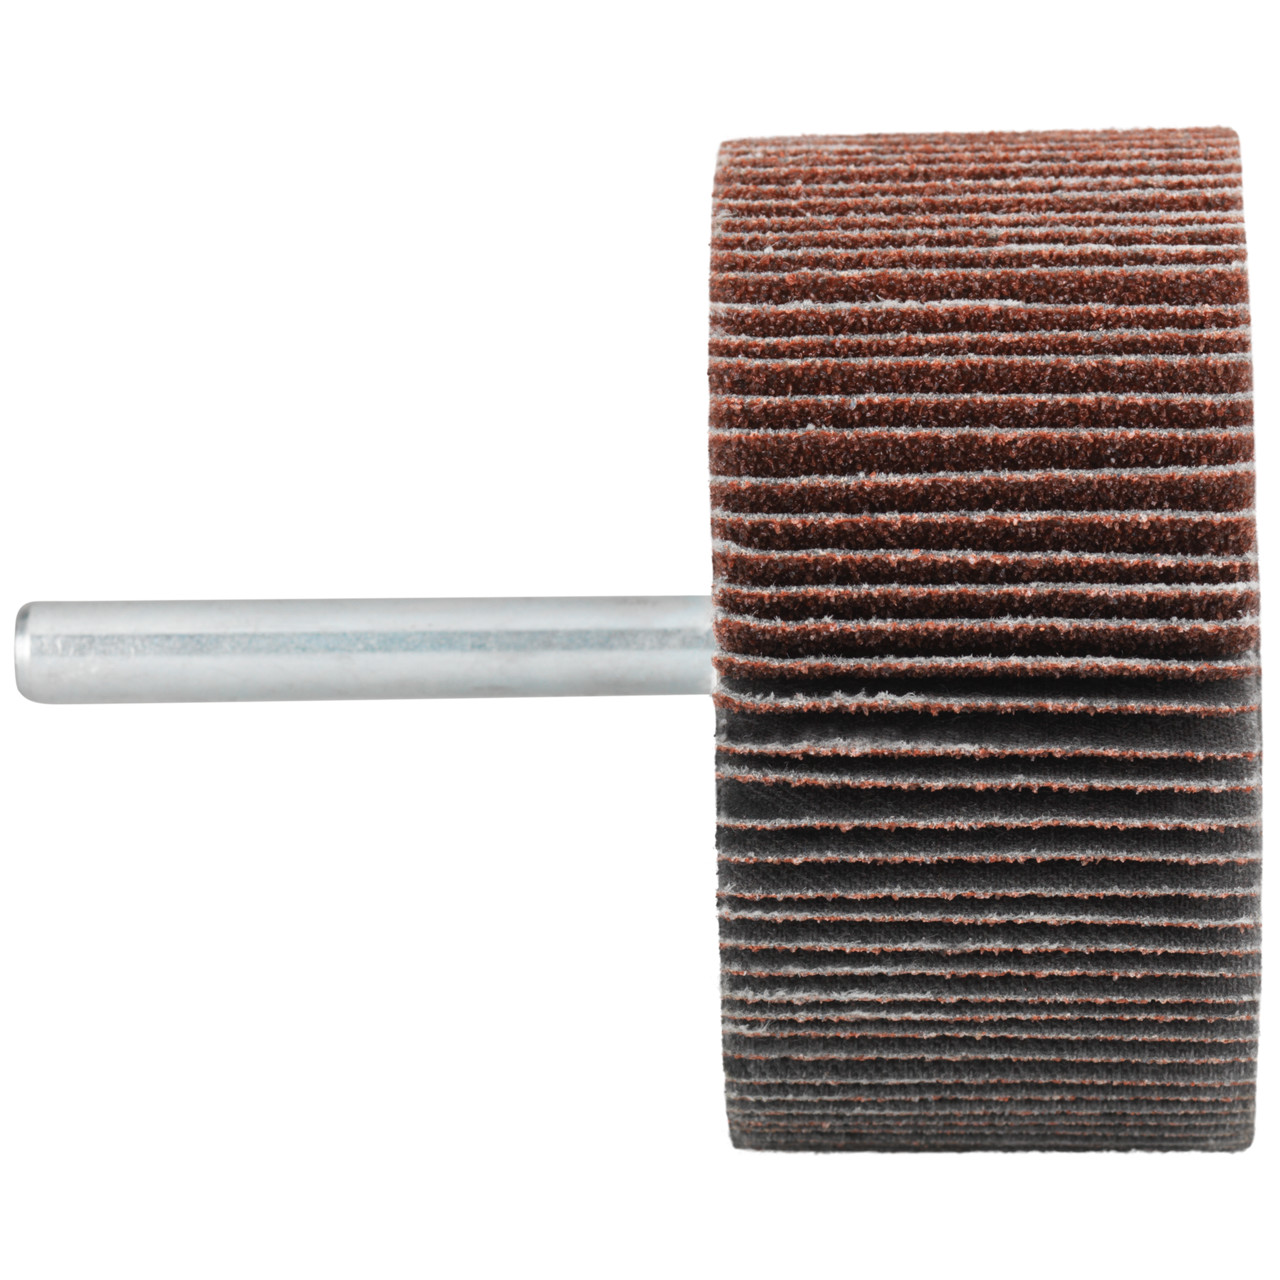 Tyrolit A-P01 C X Pennen DxD 60x20 Voor staal, roestvast staal en non-ferrometalen, P150, vorm: 52LA, Art. 816956